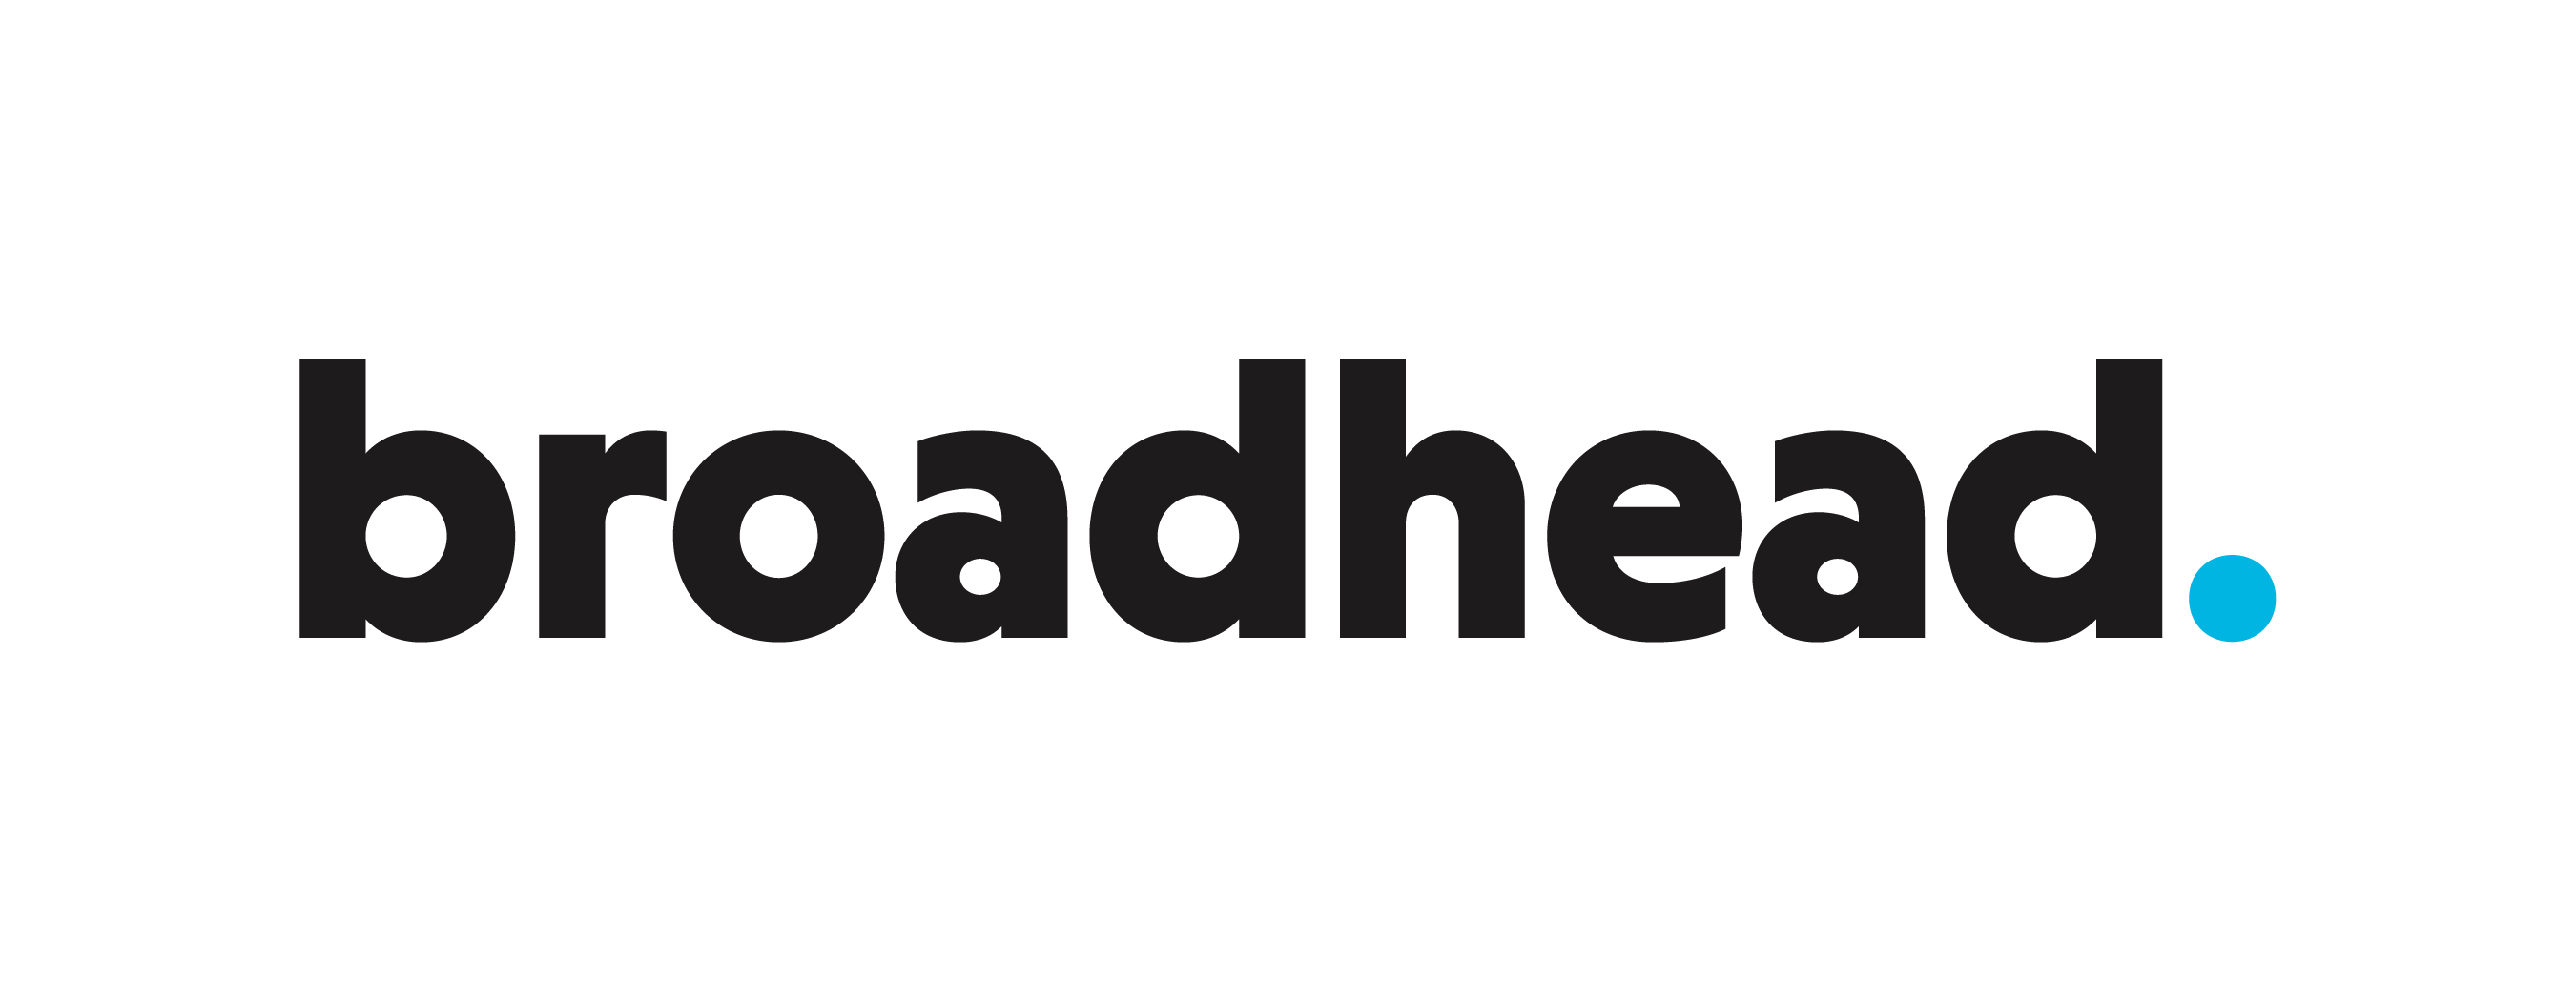 broadhead. logo